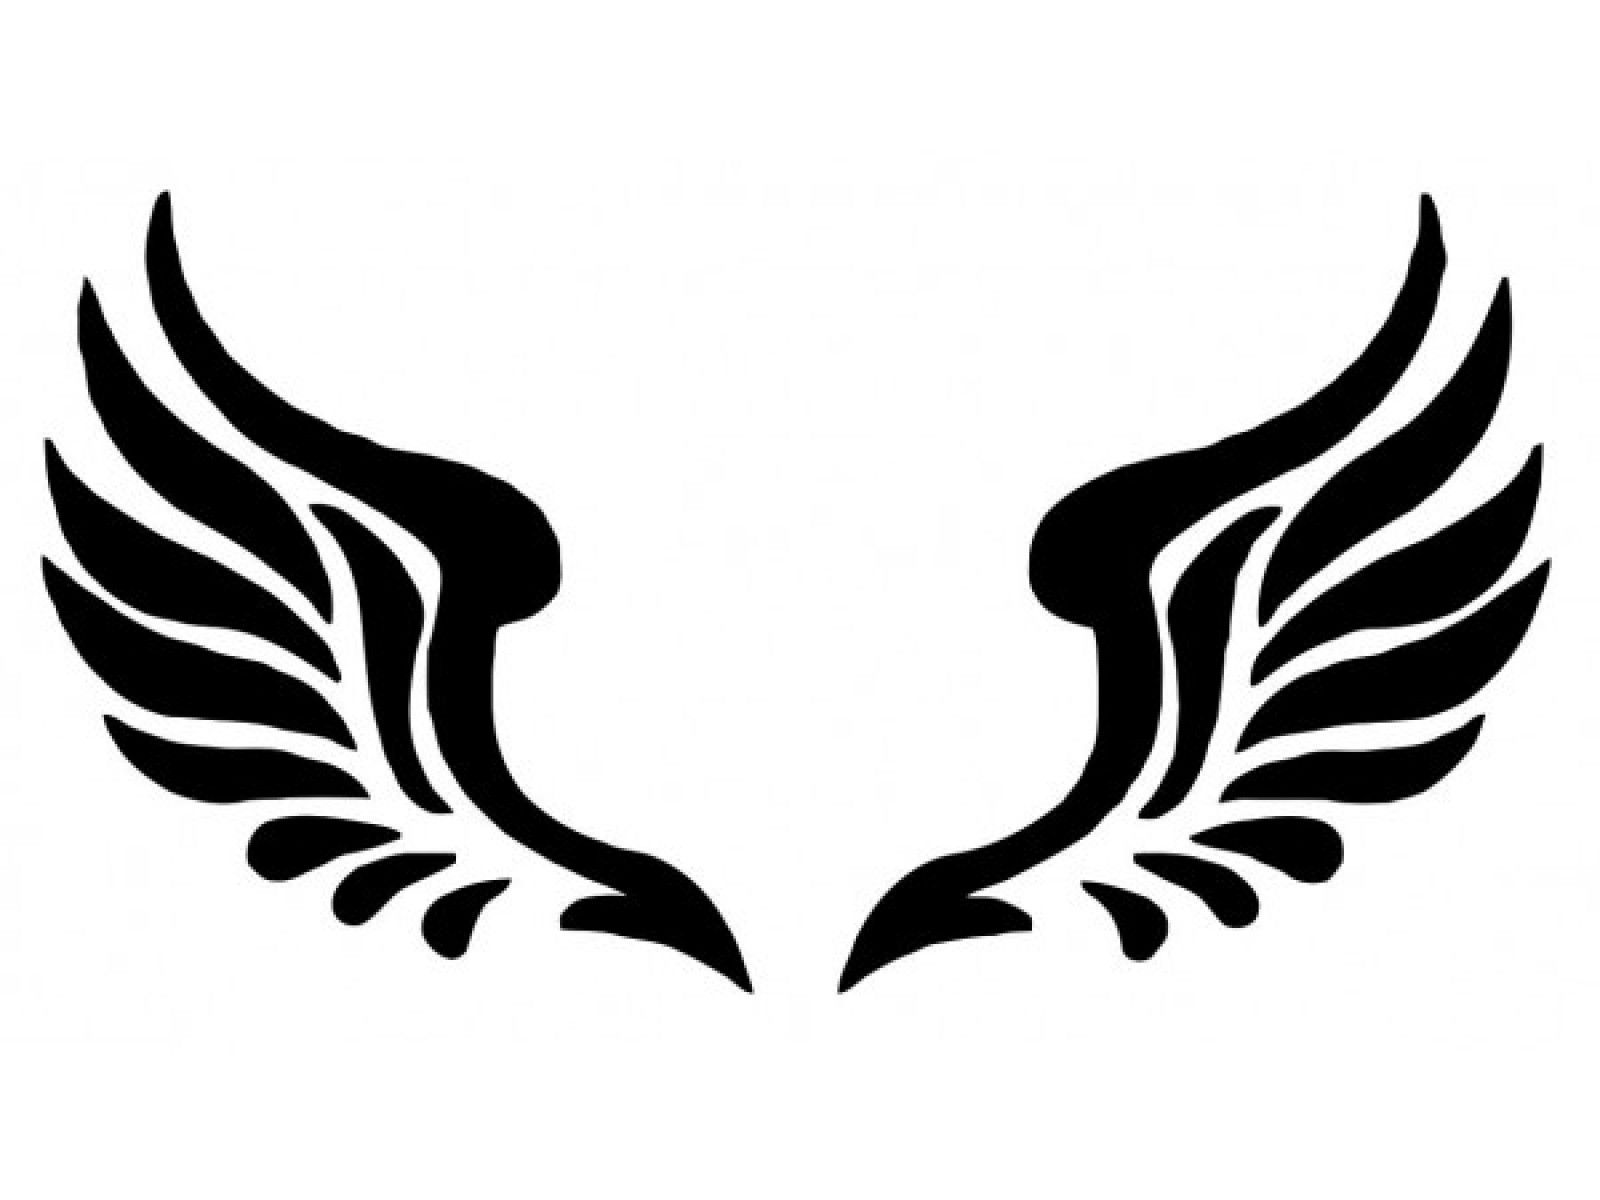 angel-wings-silhouette-vector-at-getdrawings-free-download